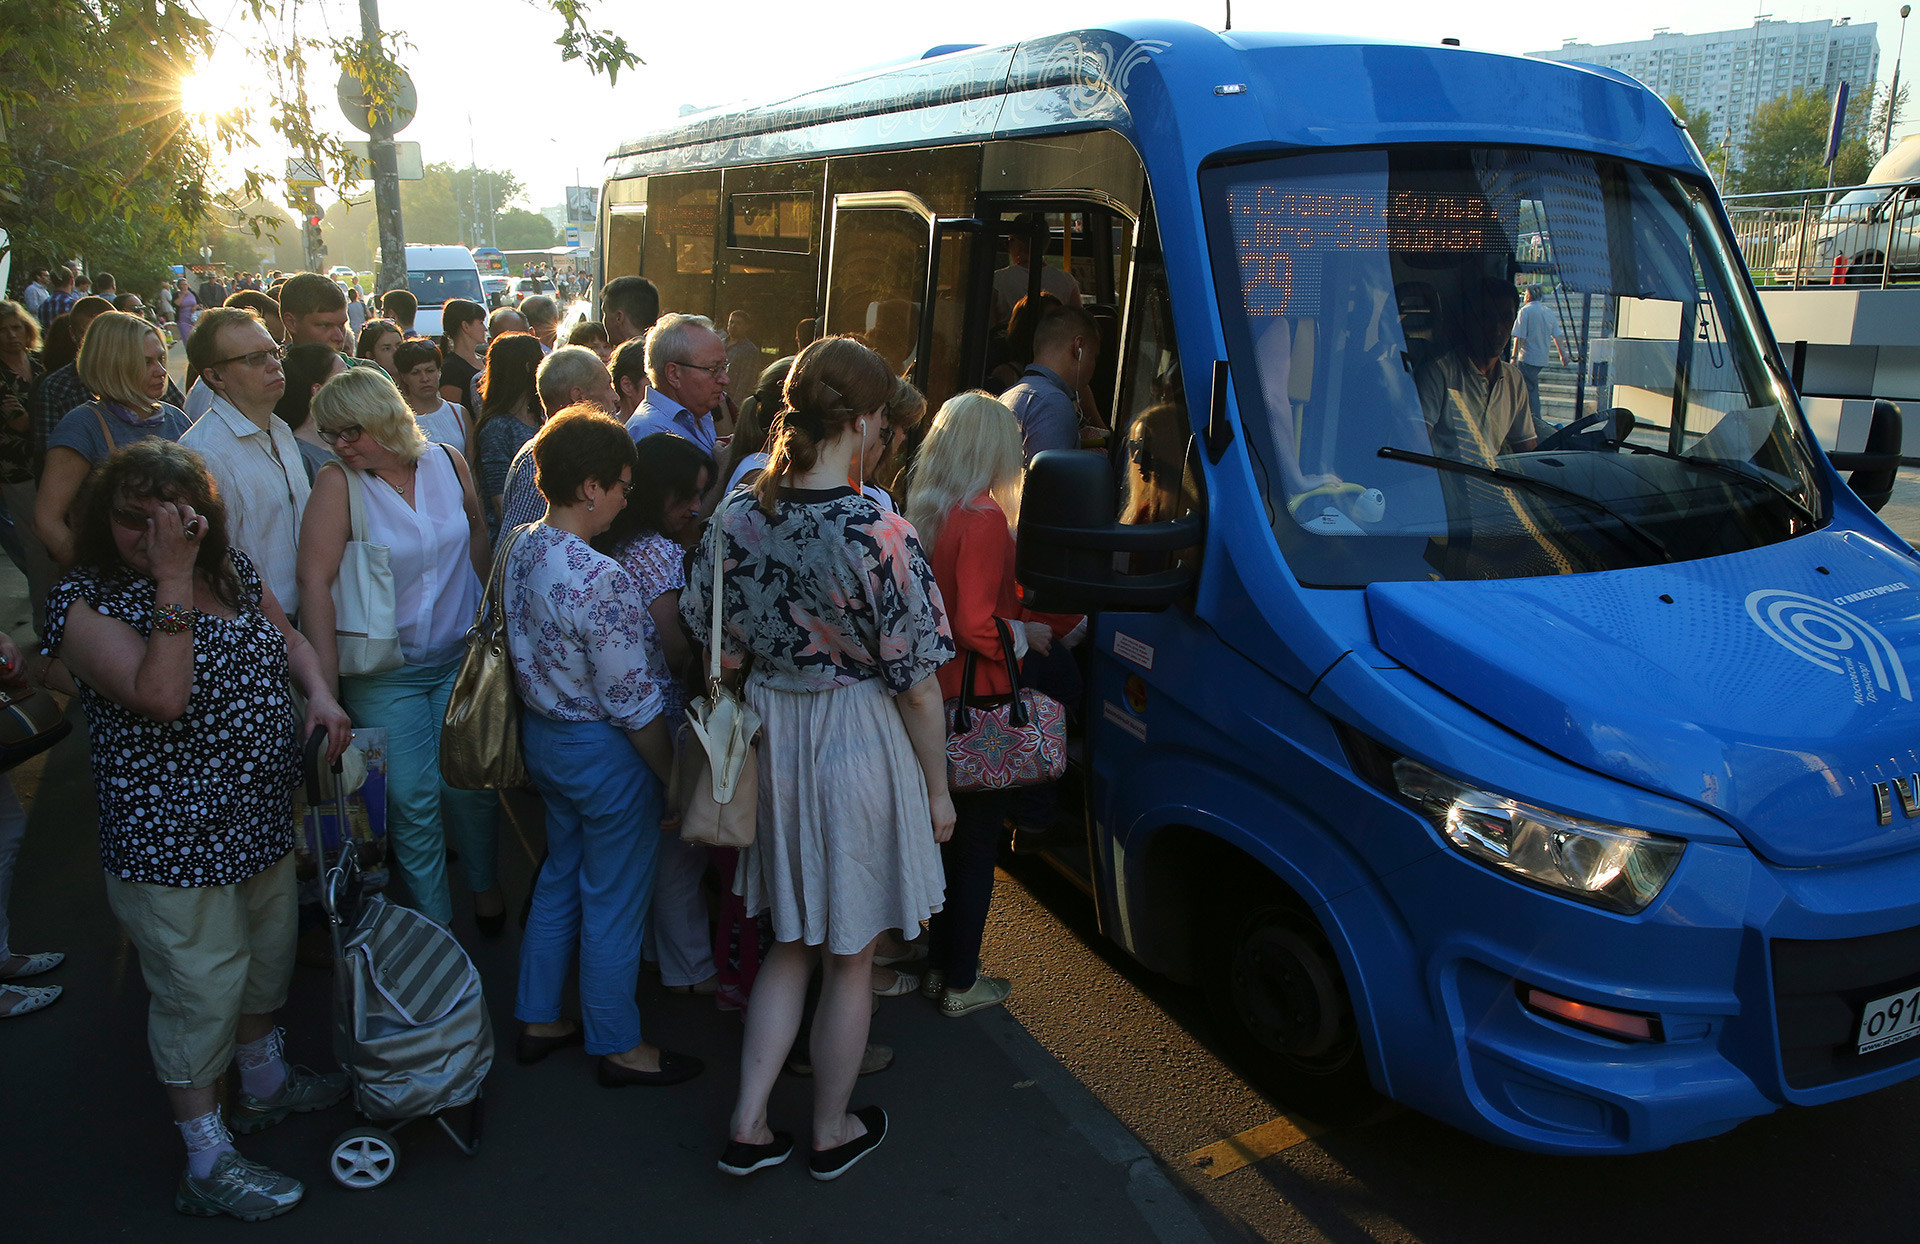 Uma 'marchrutka' (ônibus do tipo lotação) no centro de Moscou